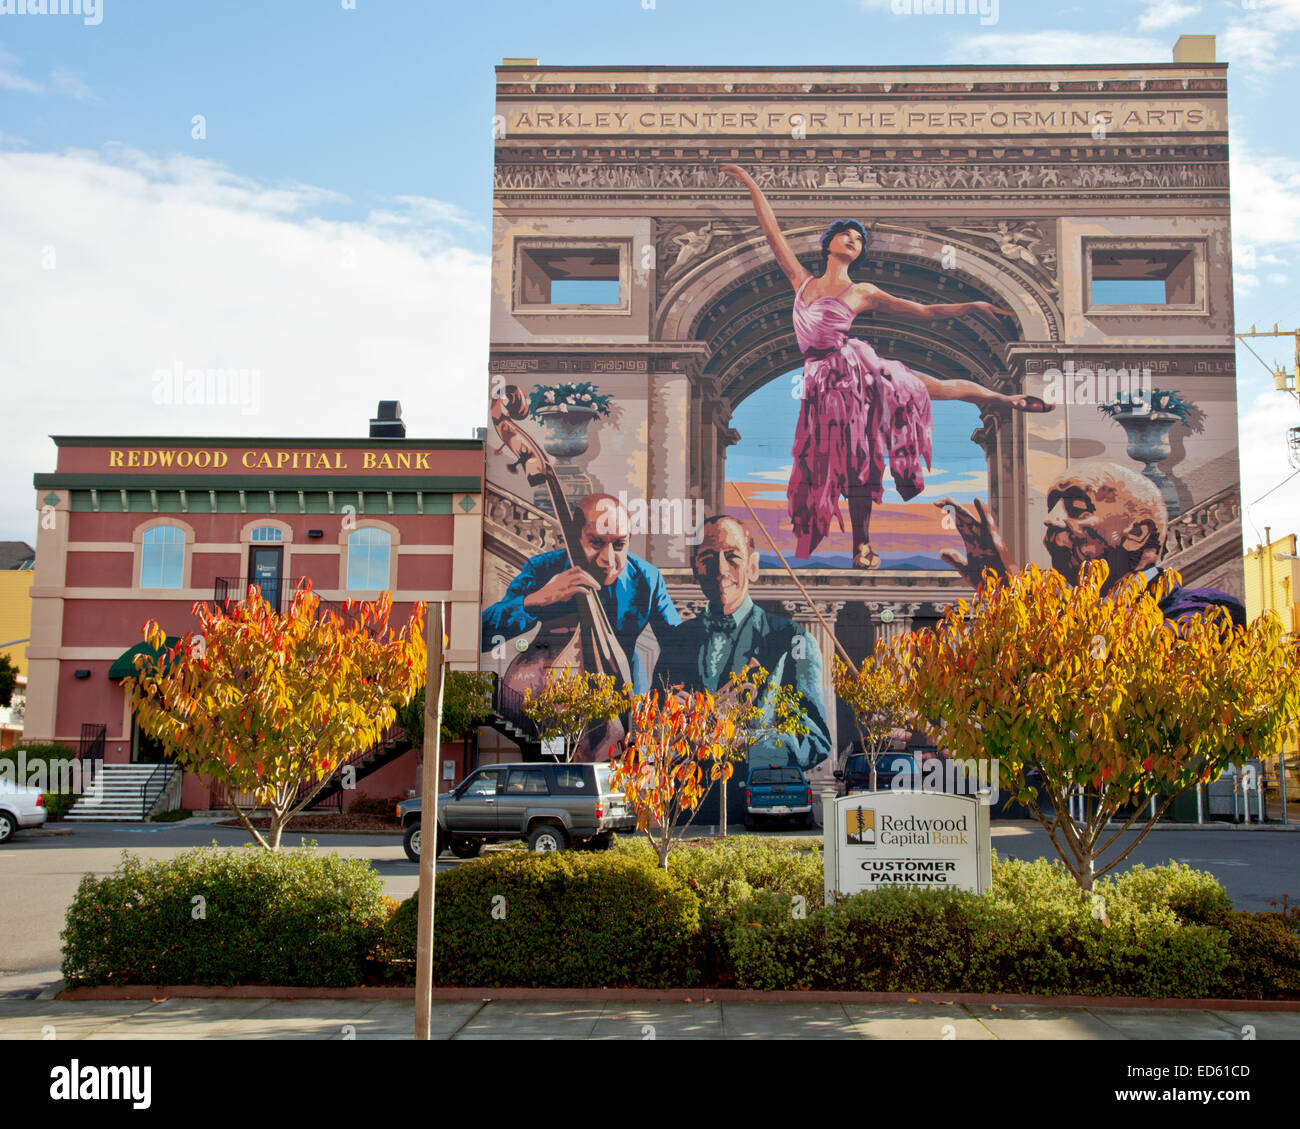 Par Duane Flatmo murale sur le côté de l'Arkley Centre for the Performing Arts, Eureka, Californie Banque D'Images